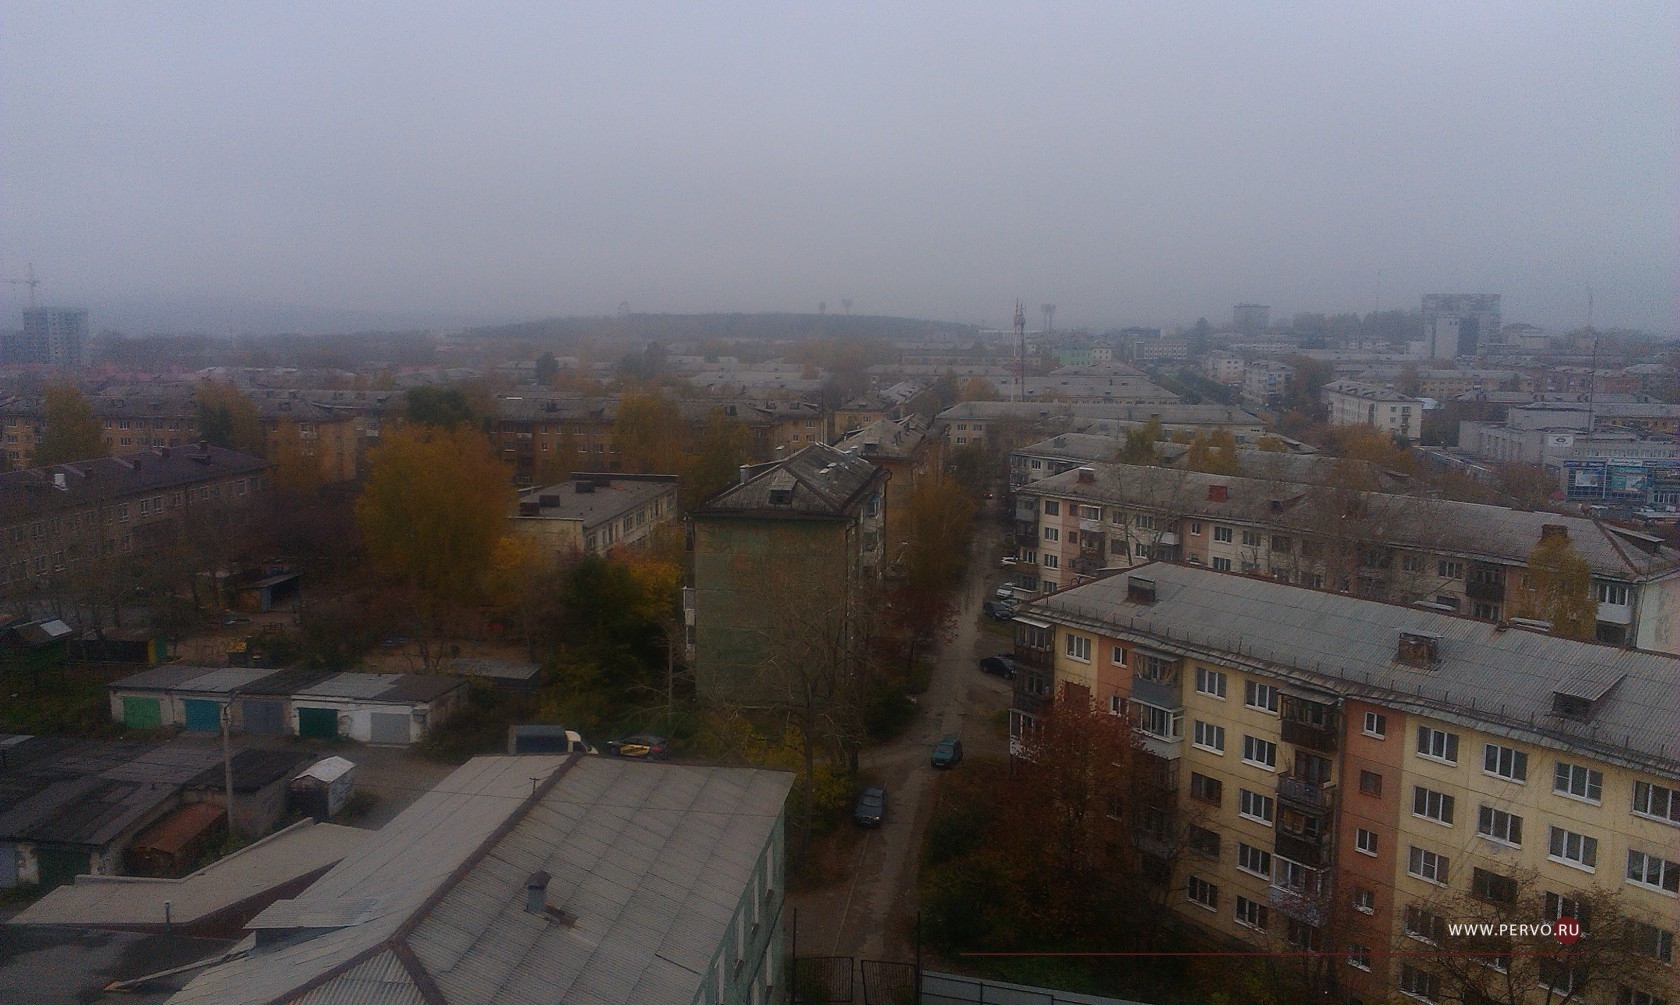 Специалисты МЧС по Свердловской области объяснили причину смога